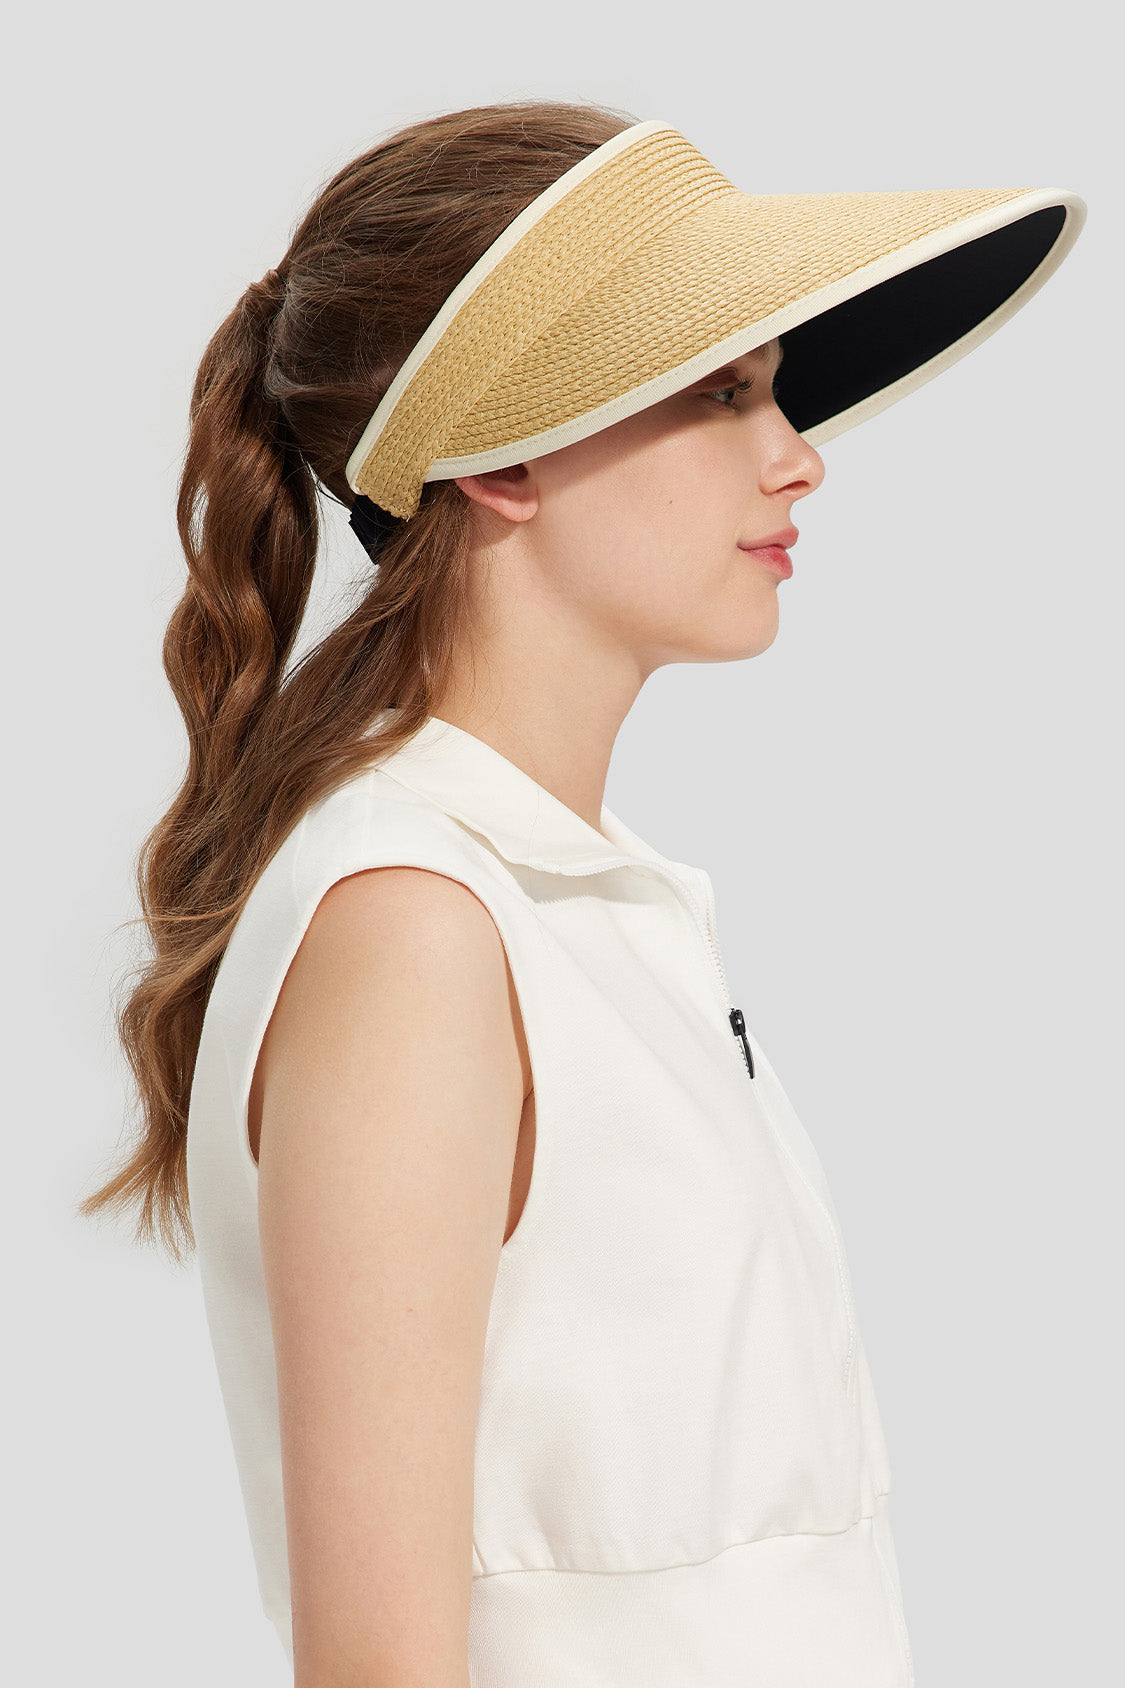 beneunder women's sun hats #color_khaki floral